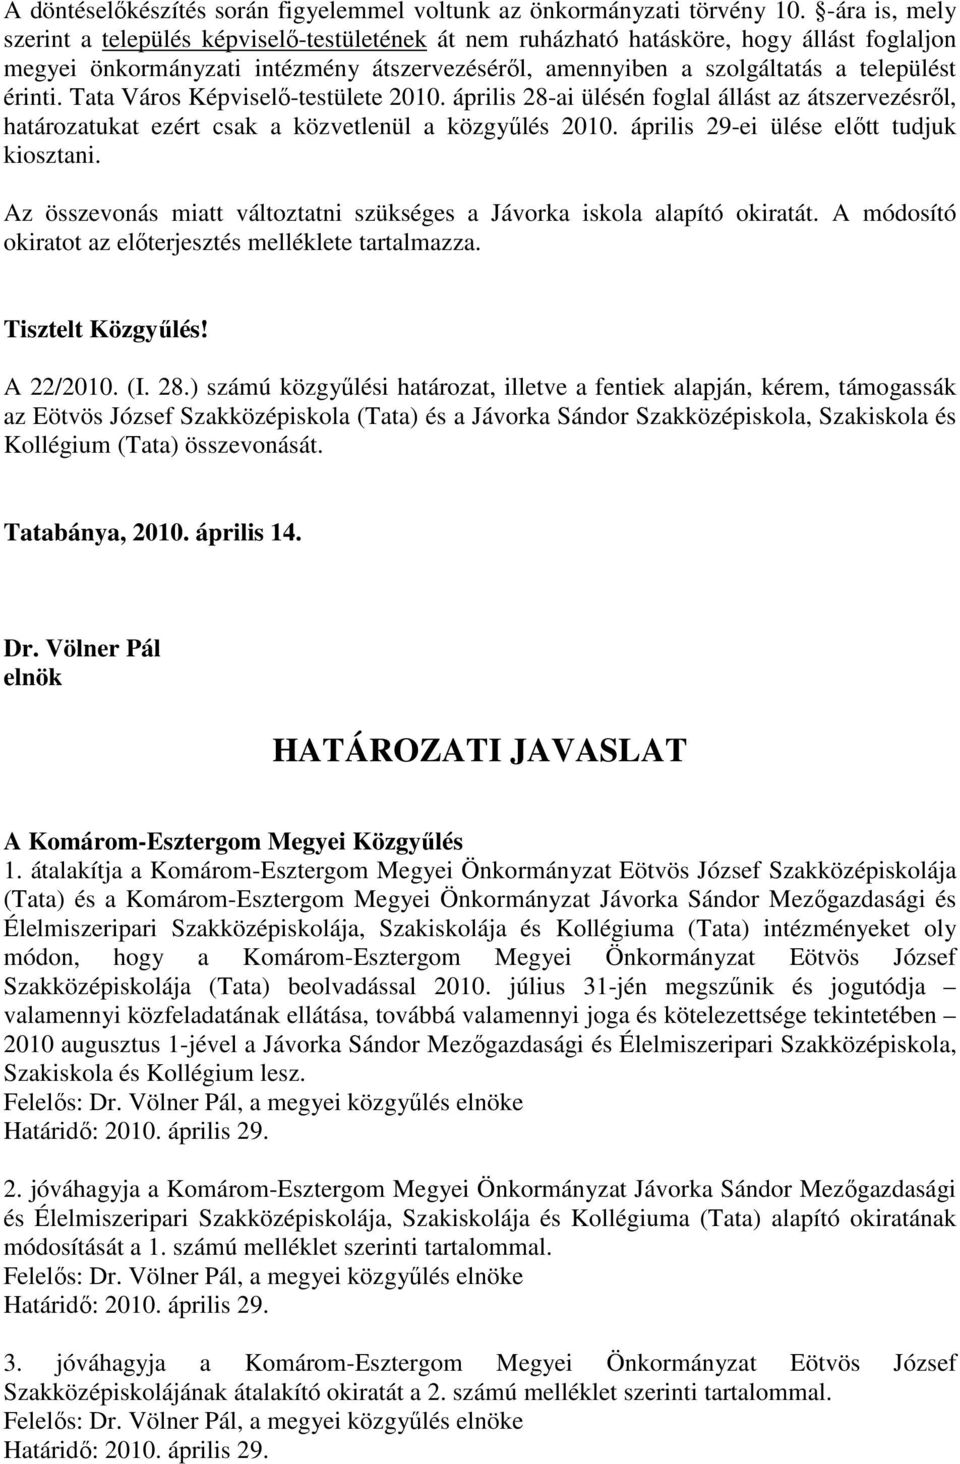 érinti. Tata Város Képviselı-testülete 2010. április 28-ai ülésén foglal állást az átszervezésrıl, határozatukat ezért csak a közvetlenül a közgyőlés 2010. április 29-ei ülése elıtt tudjuk kiosztani.